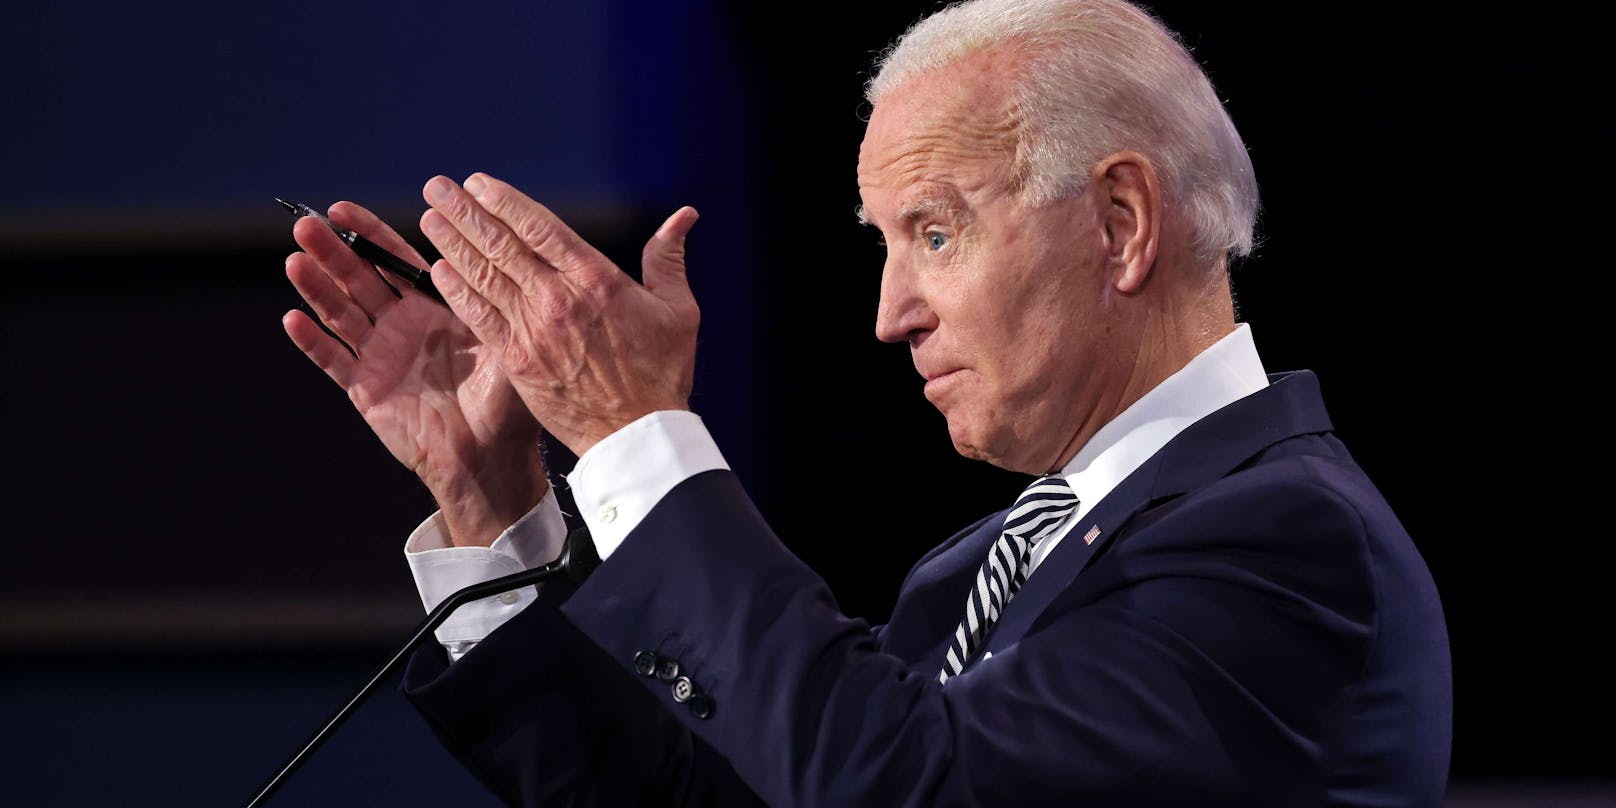 Die "New York Post" veröffentlichte Mails, die den demokratischen Präsidentschaftskandidaten Joe Biden belasten.